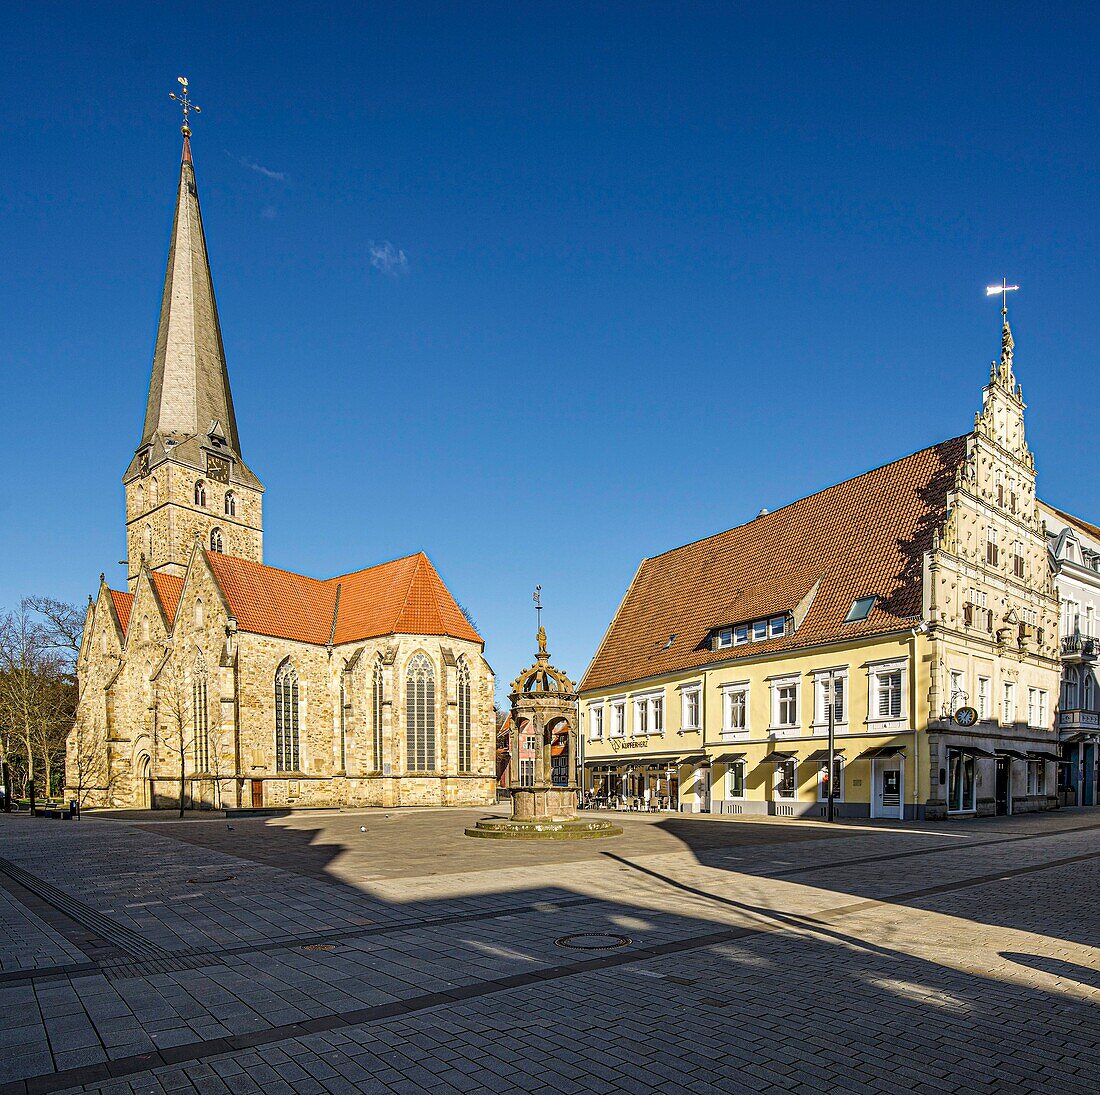 St. Johannis, Neustädter Brunnen und Rathaus, am Neuen Markt, Herford, Nordrhein-Westfalen, Deutschland